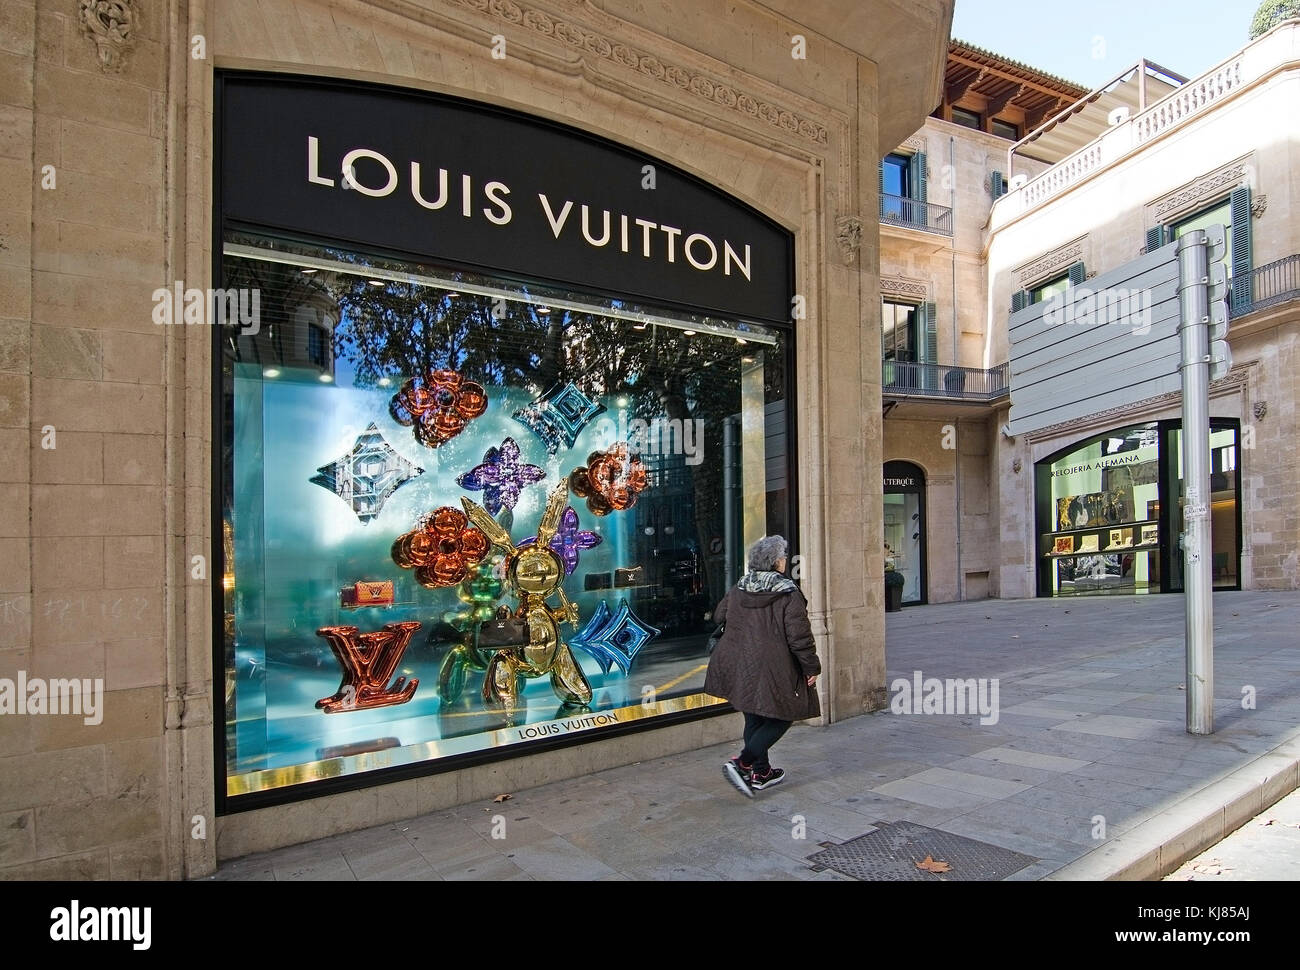 Maiorca, isole Baleari, Spagna - 8 novembre 2017: vedute urbane negozio Louis Vuitton vestito per vacanze a Palma de Mallorca in una giornata di sole su novem Foto Stock